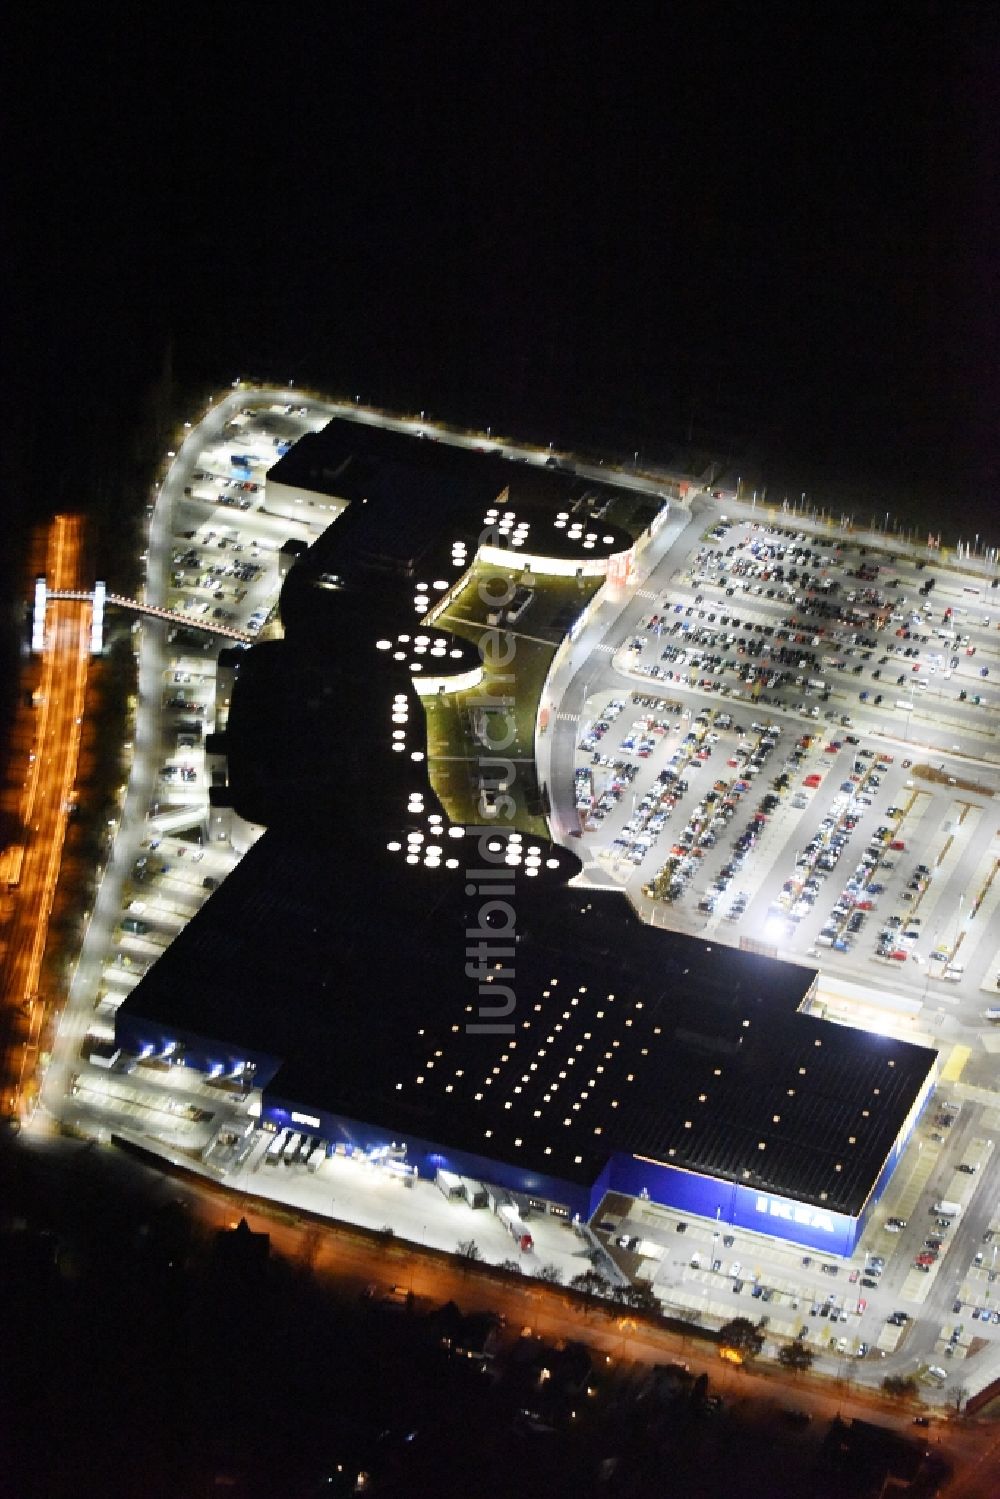 Nacht-Luftaufnahme Lübeck - Nachtluftbild vom Gebäude des Einkaufszentrum LUV SHOPPING in Dänischburg, Lübeck im Bundesland Schleswig-Holstein